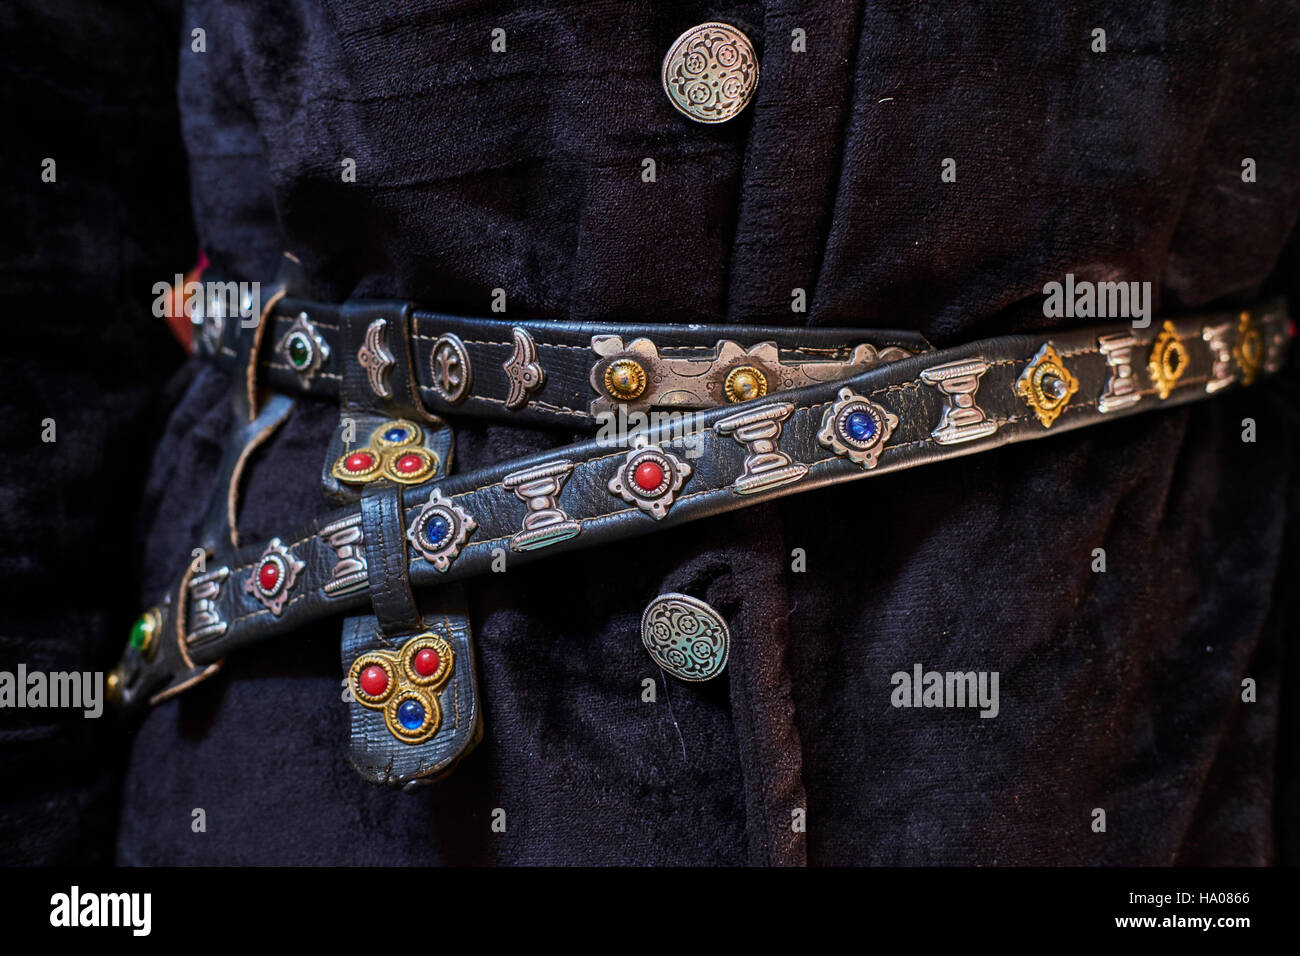 Mongolia, Bayan-Ulgii provincia, Mongolia occidentale, il dettaglio di un costum kazako, cinghia Foto Stock